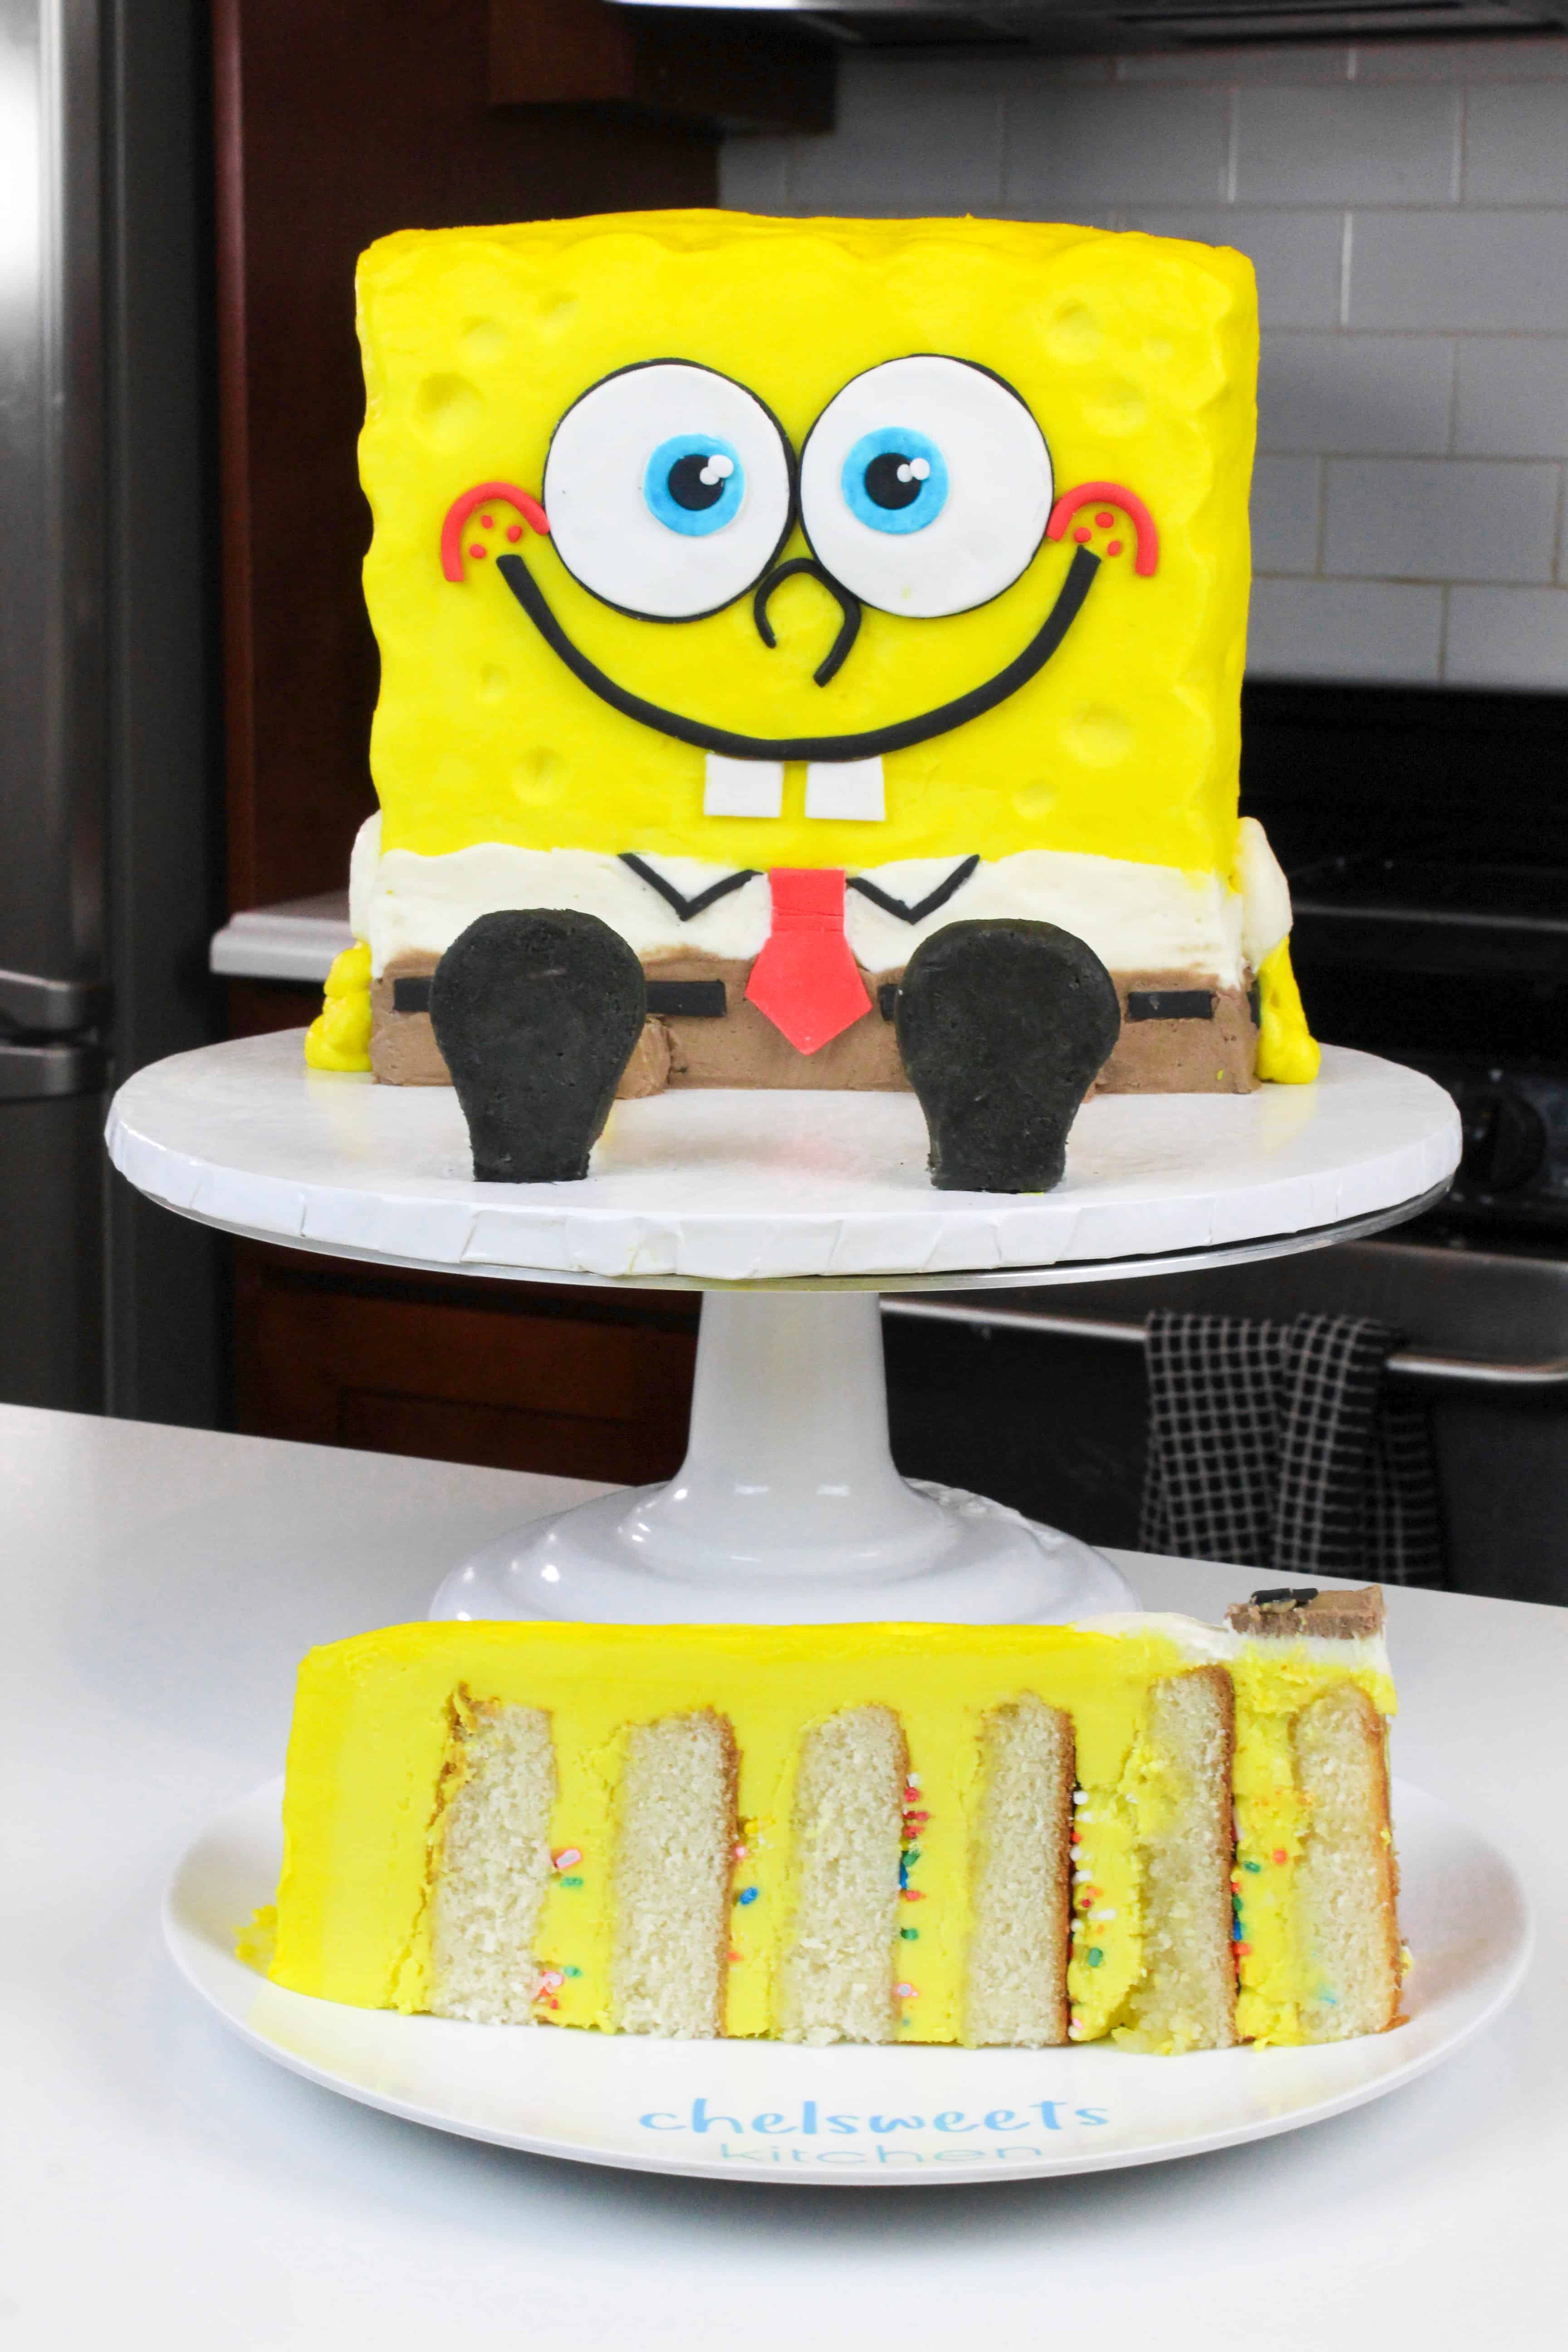 Spongebob Cake Recipe - Food.com